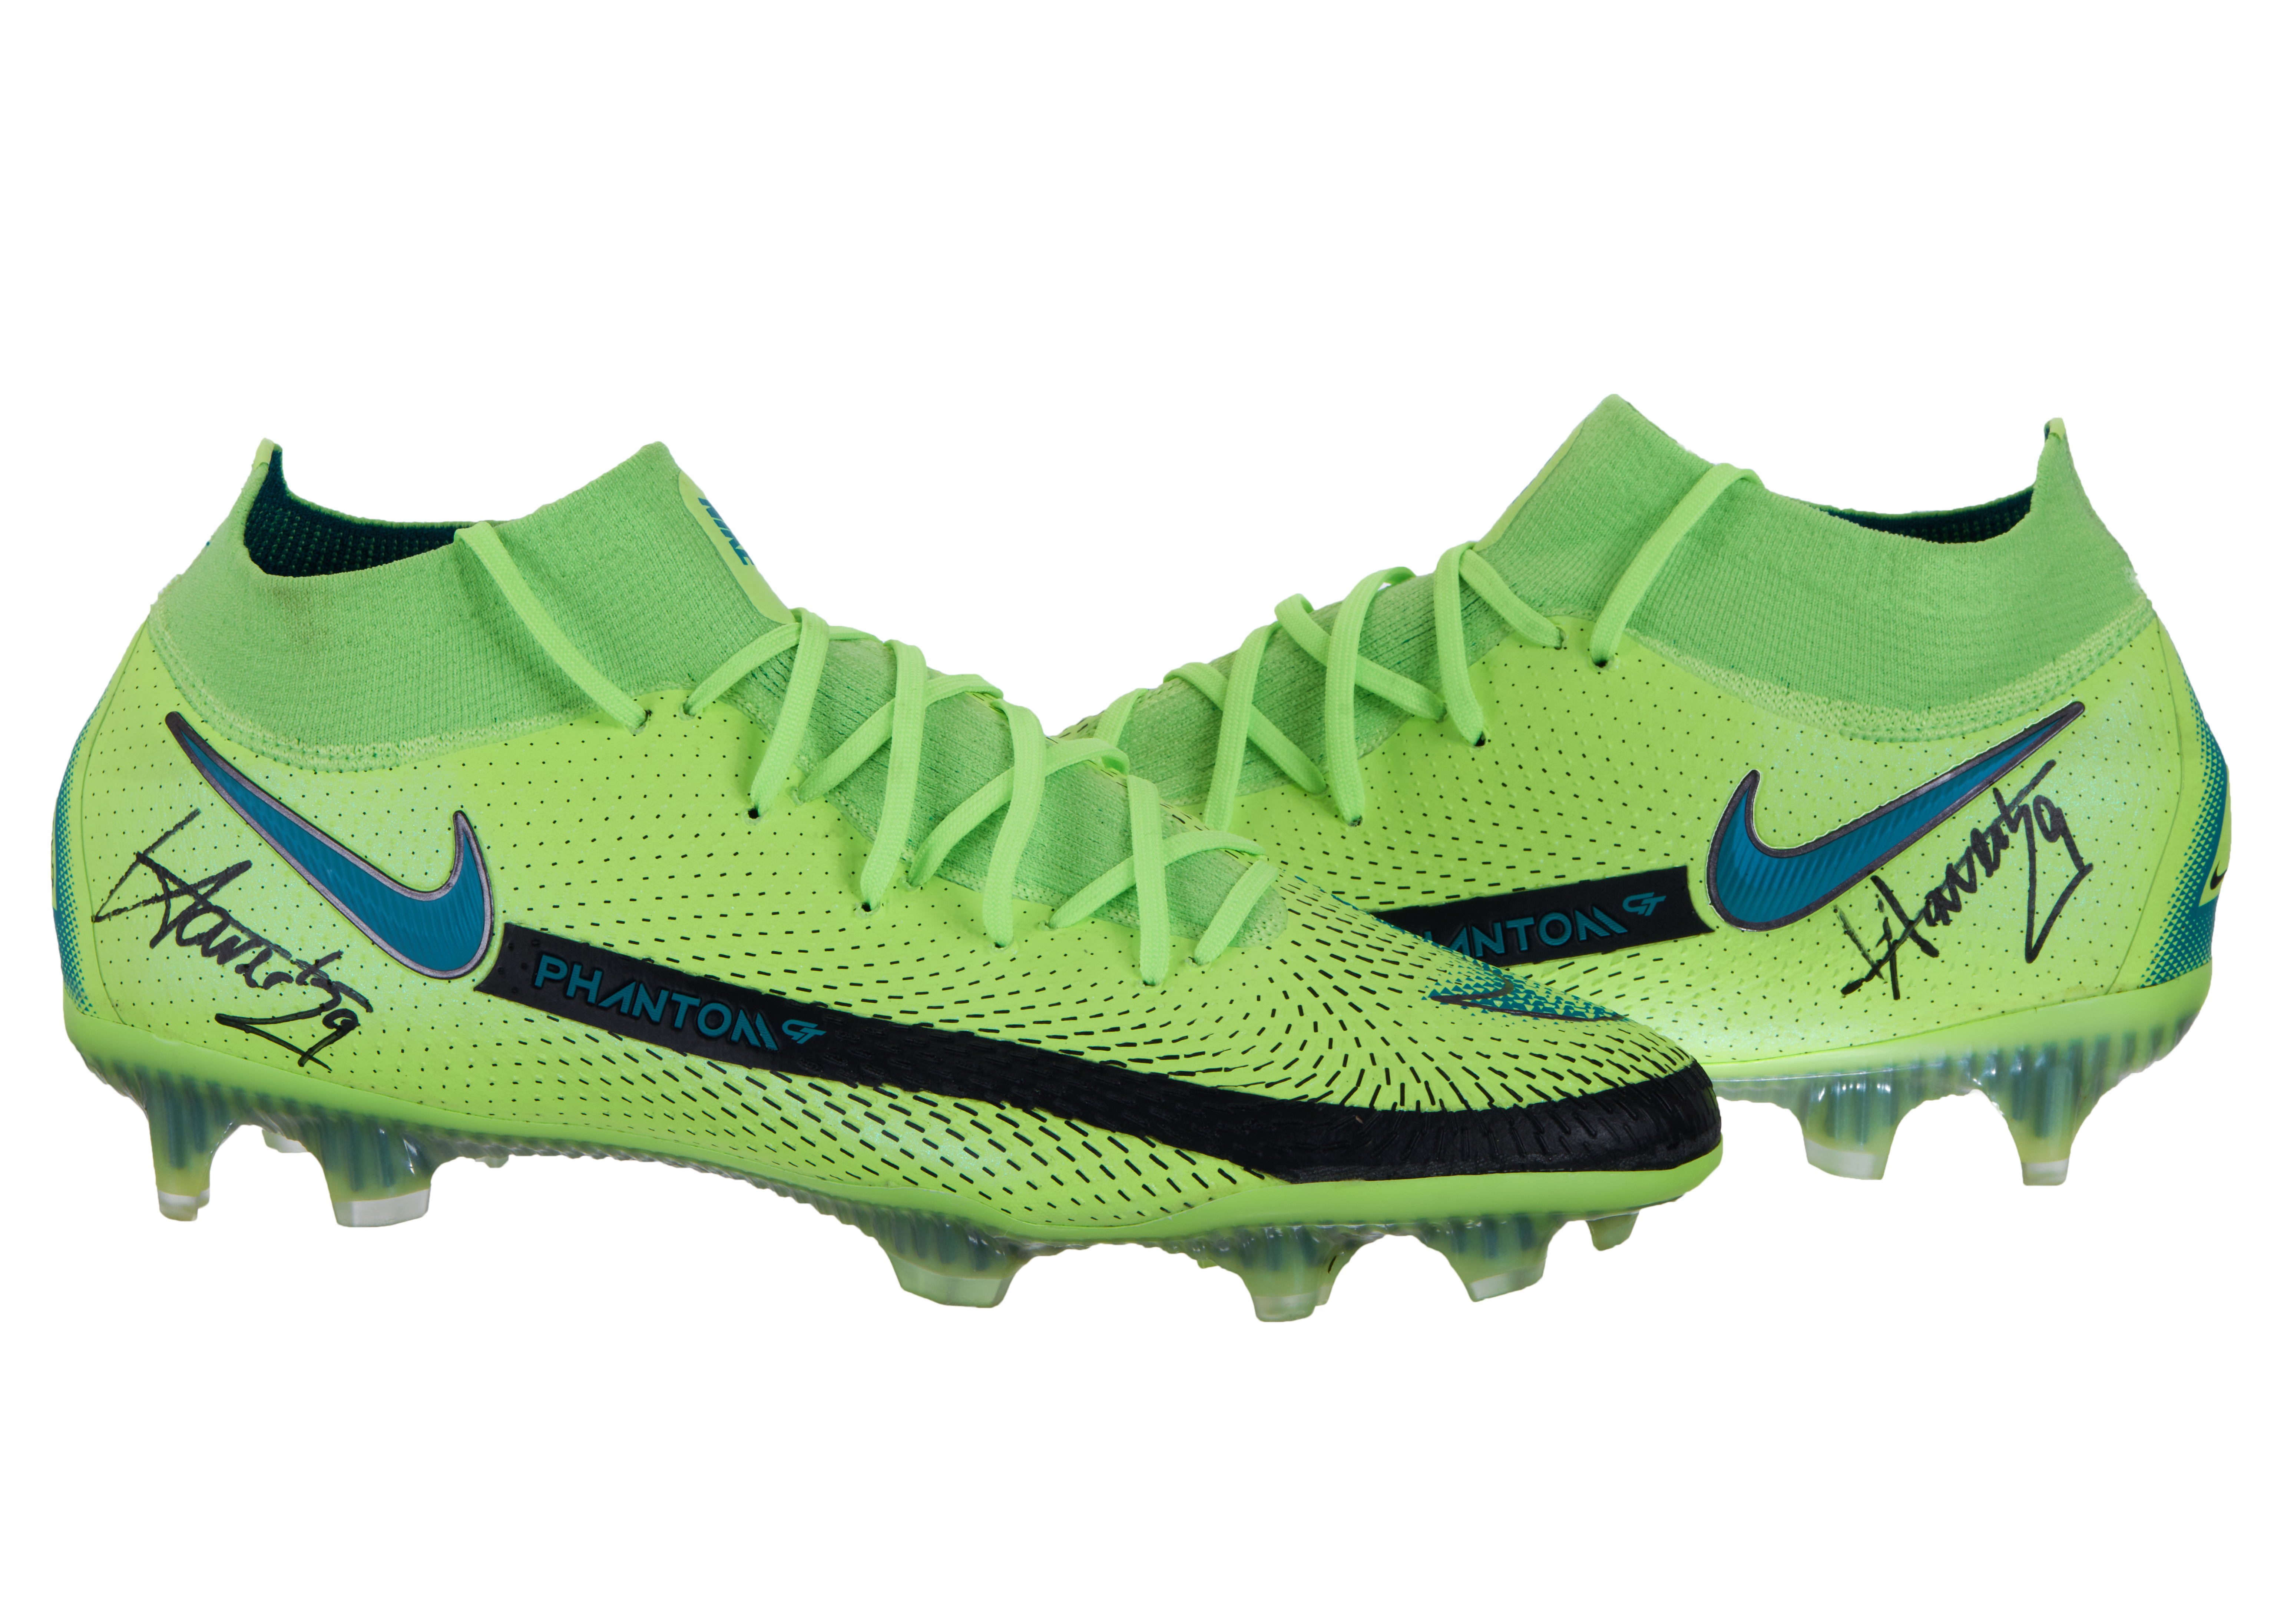 Kai Havertz Signed Nike Boots Charity 